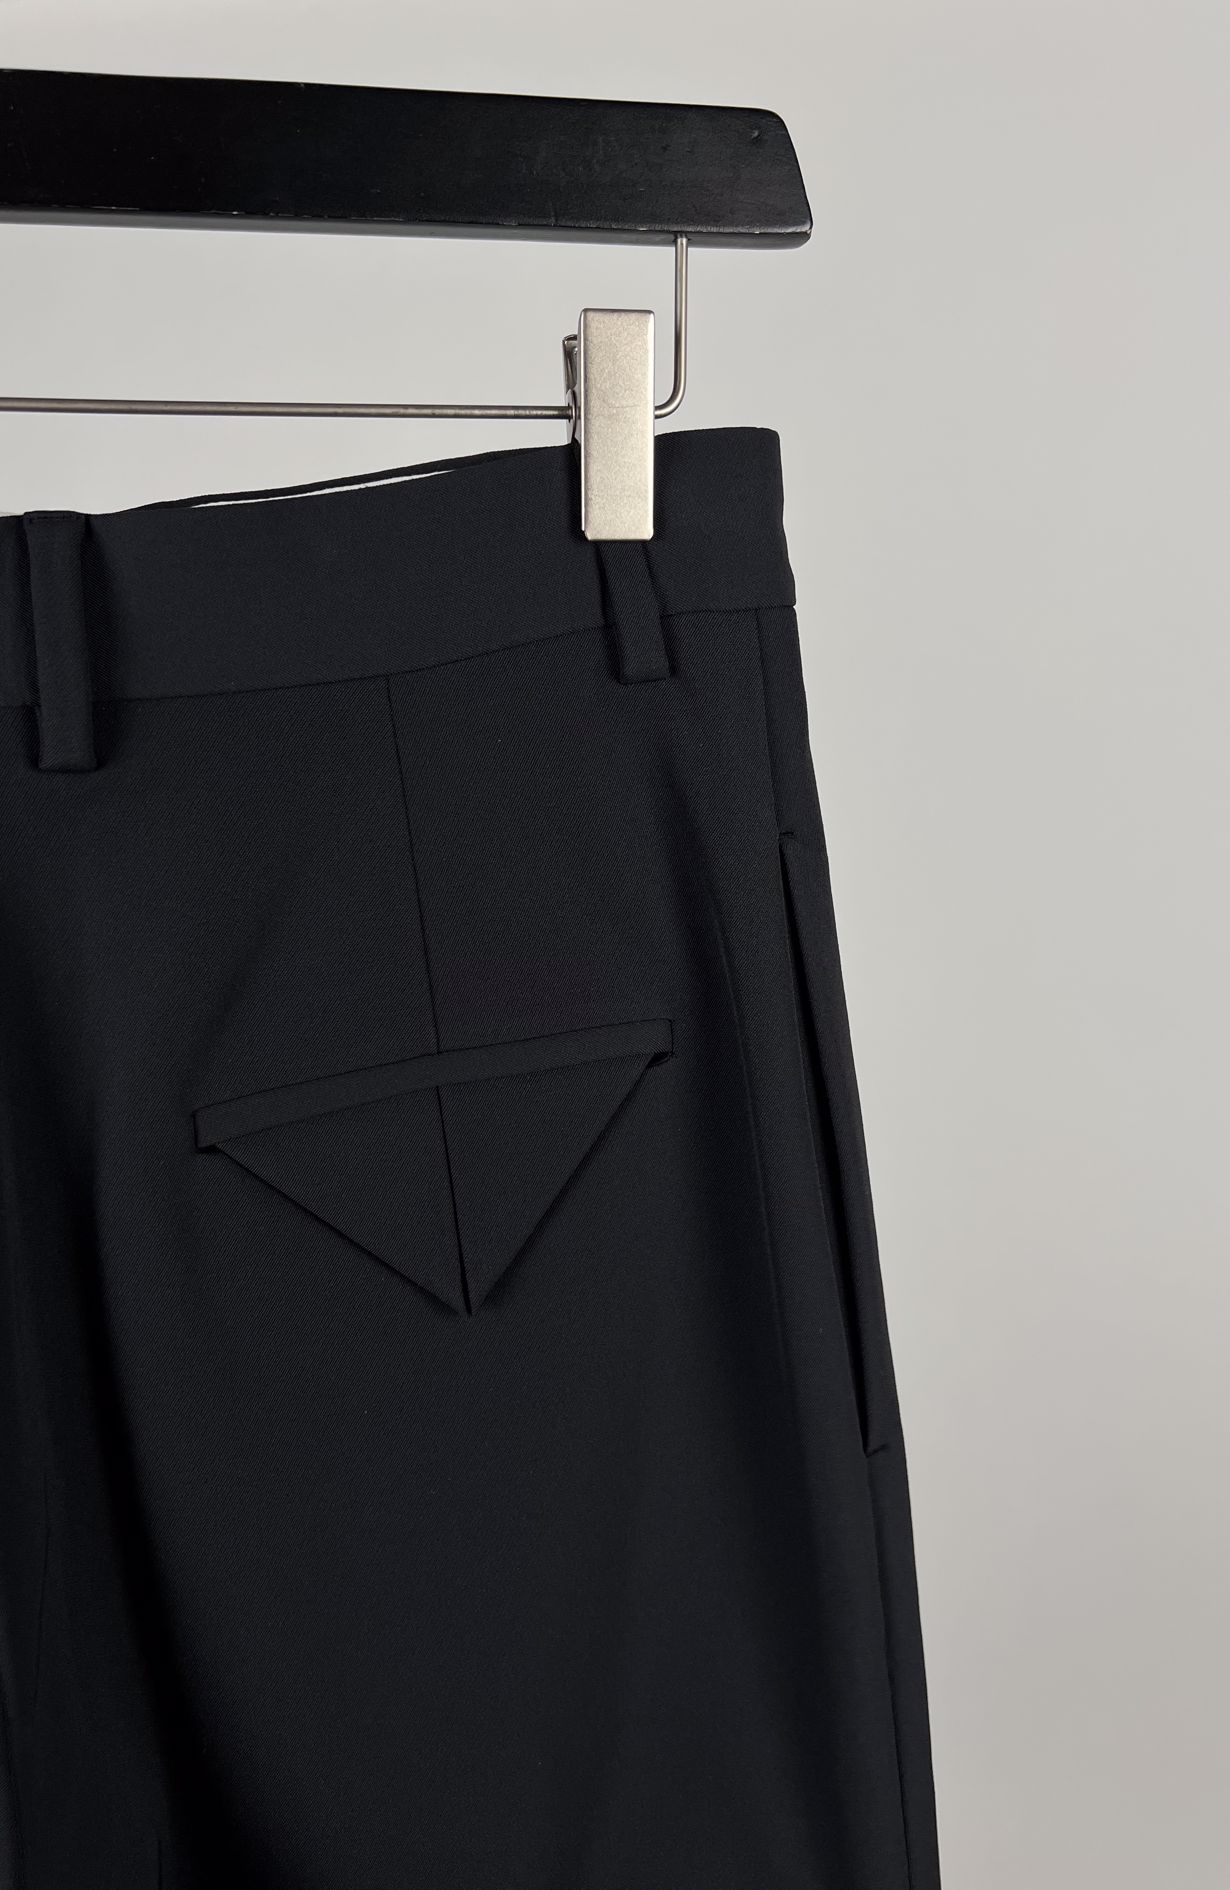 Bottega Veneta shorts black size IT38 (36)